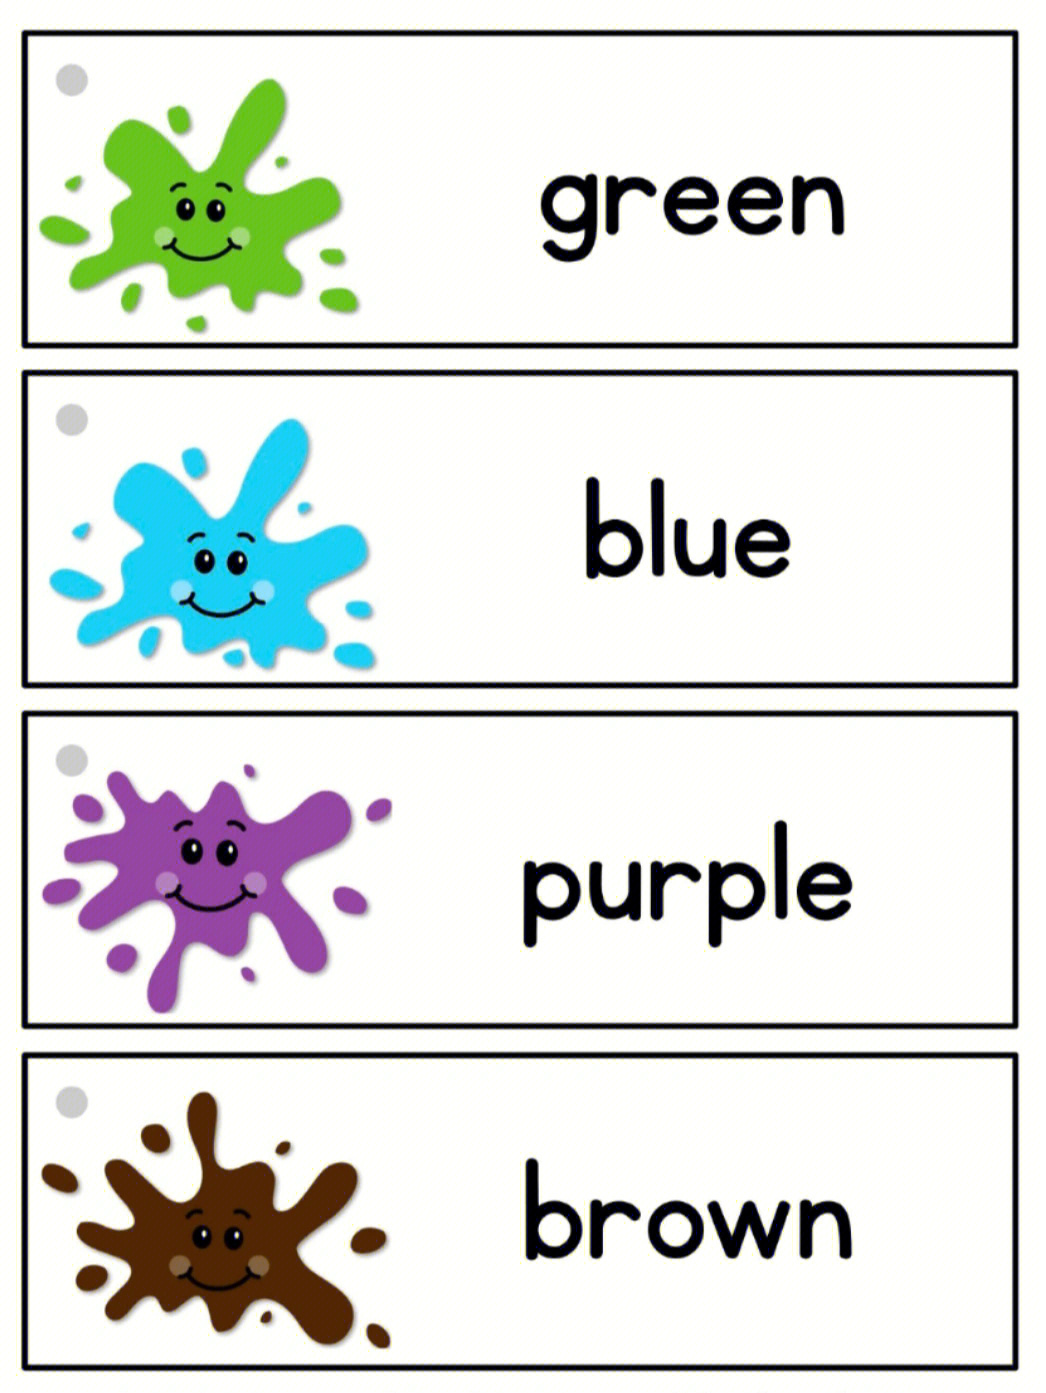 purple英语单词图片